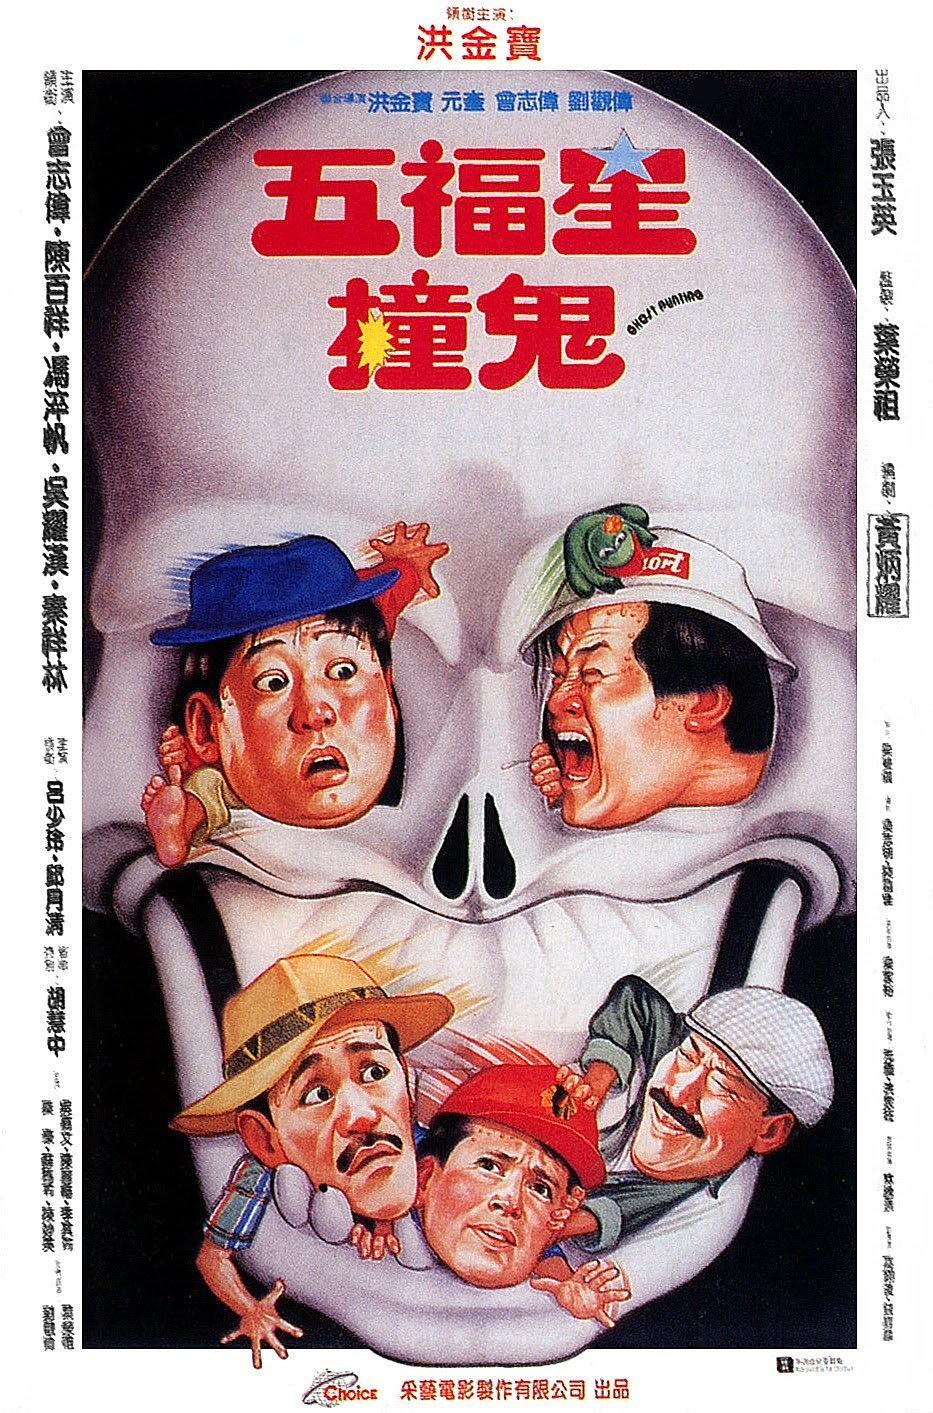 40部搞笑的香港鬼片让你想起了dvcd时代了吗